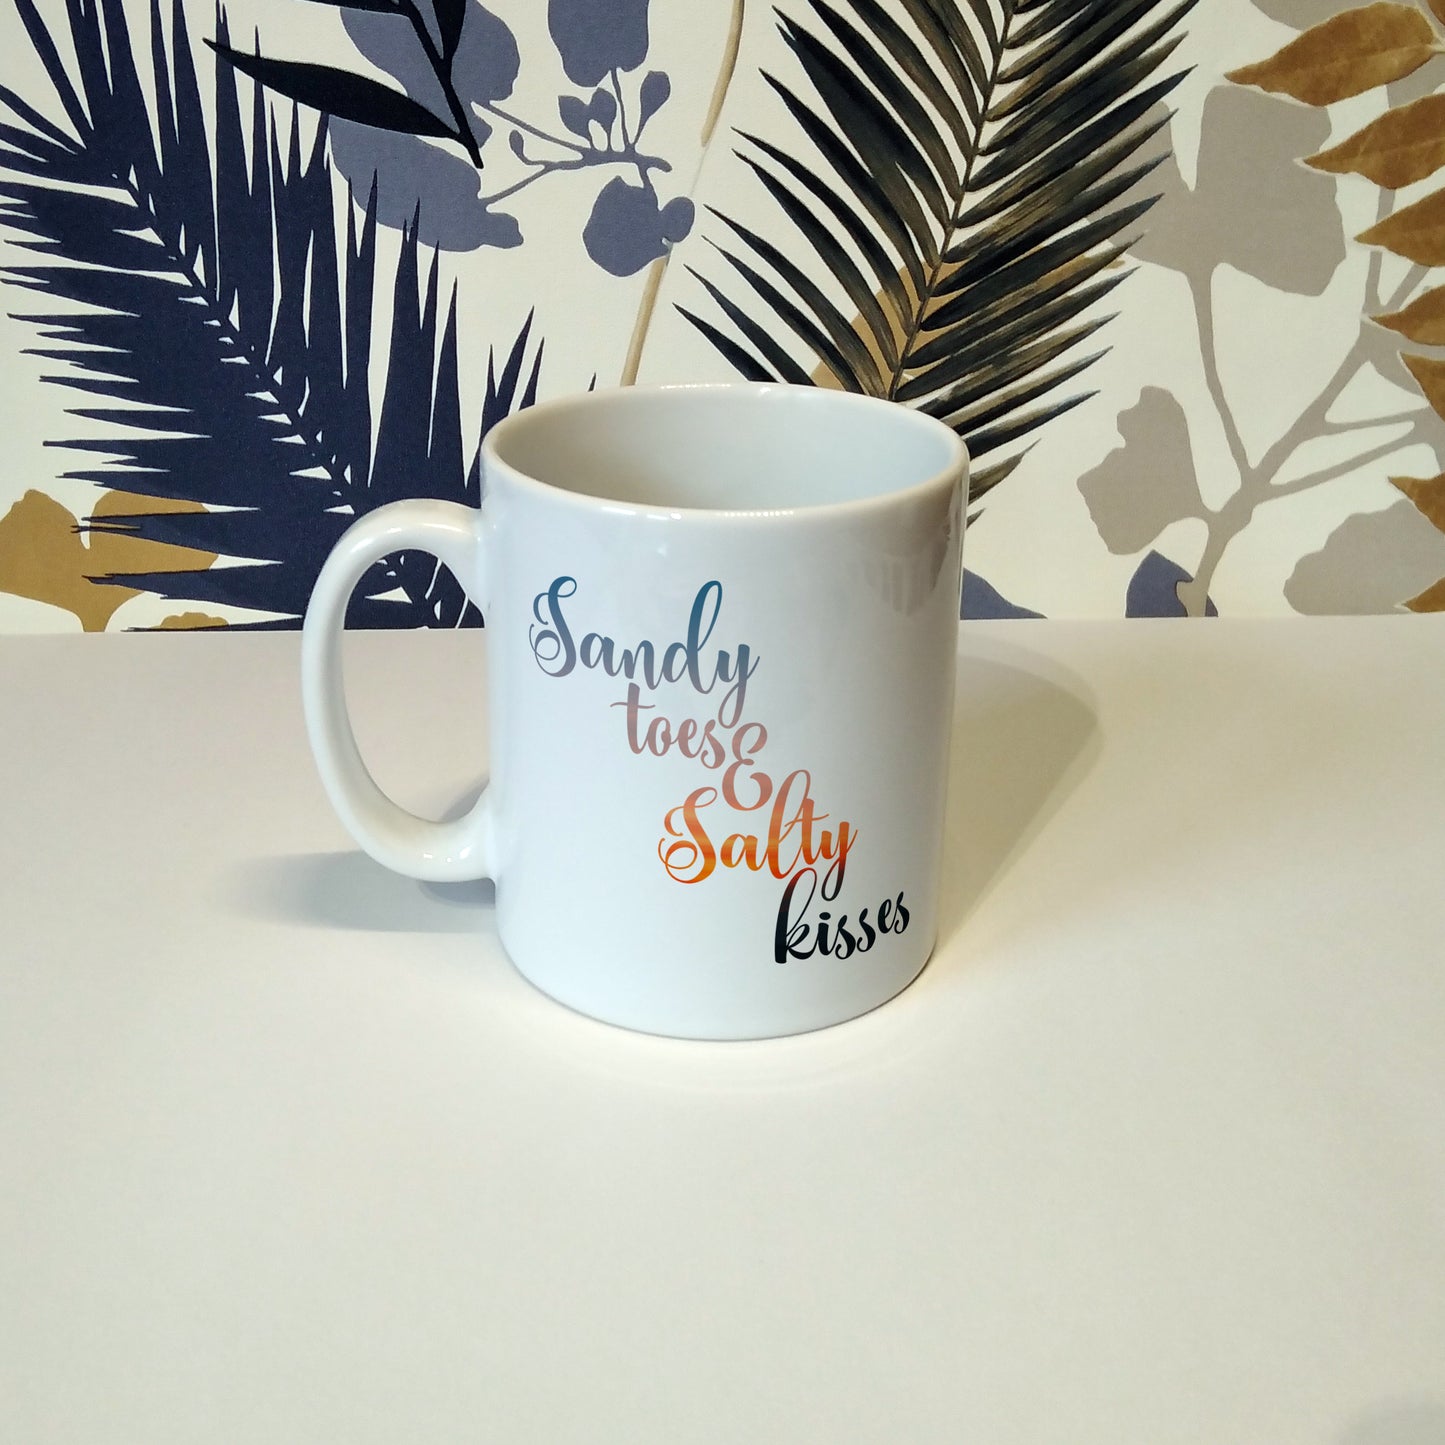 Sandy toes and salty kisses | Ceramic mug